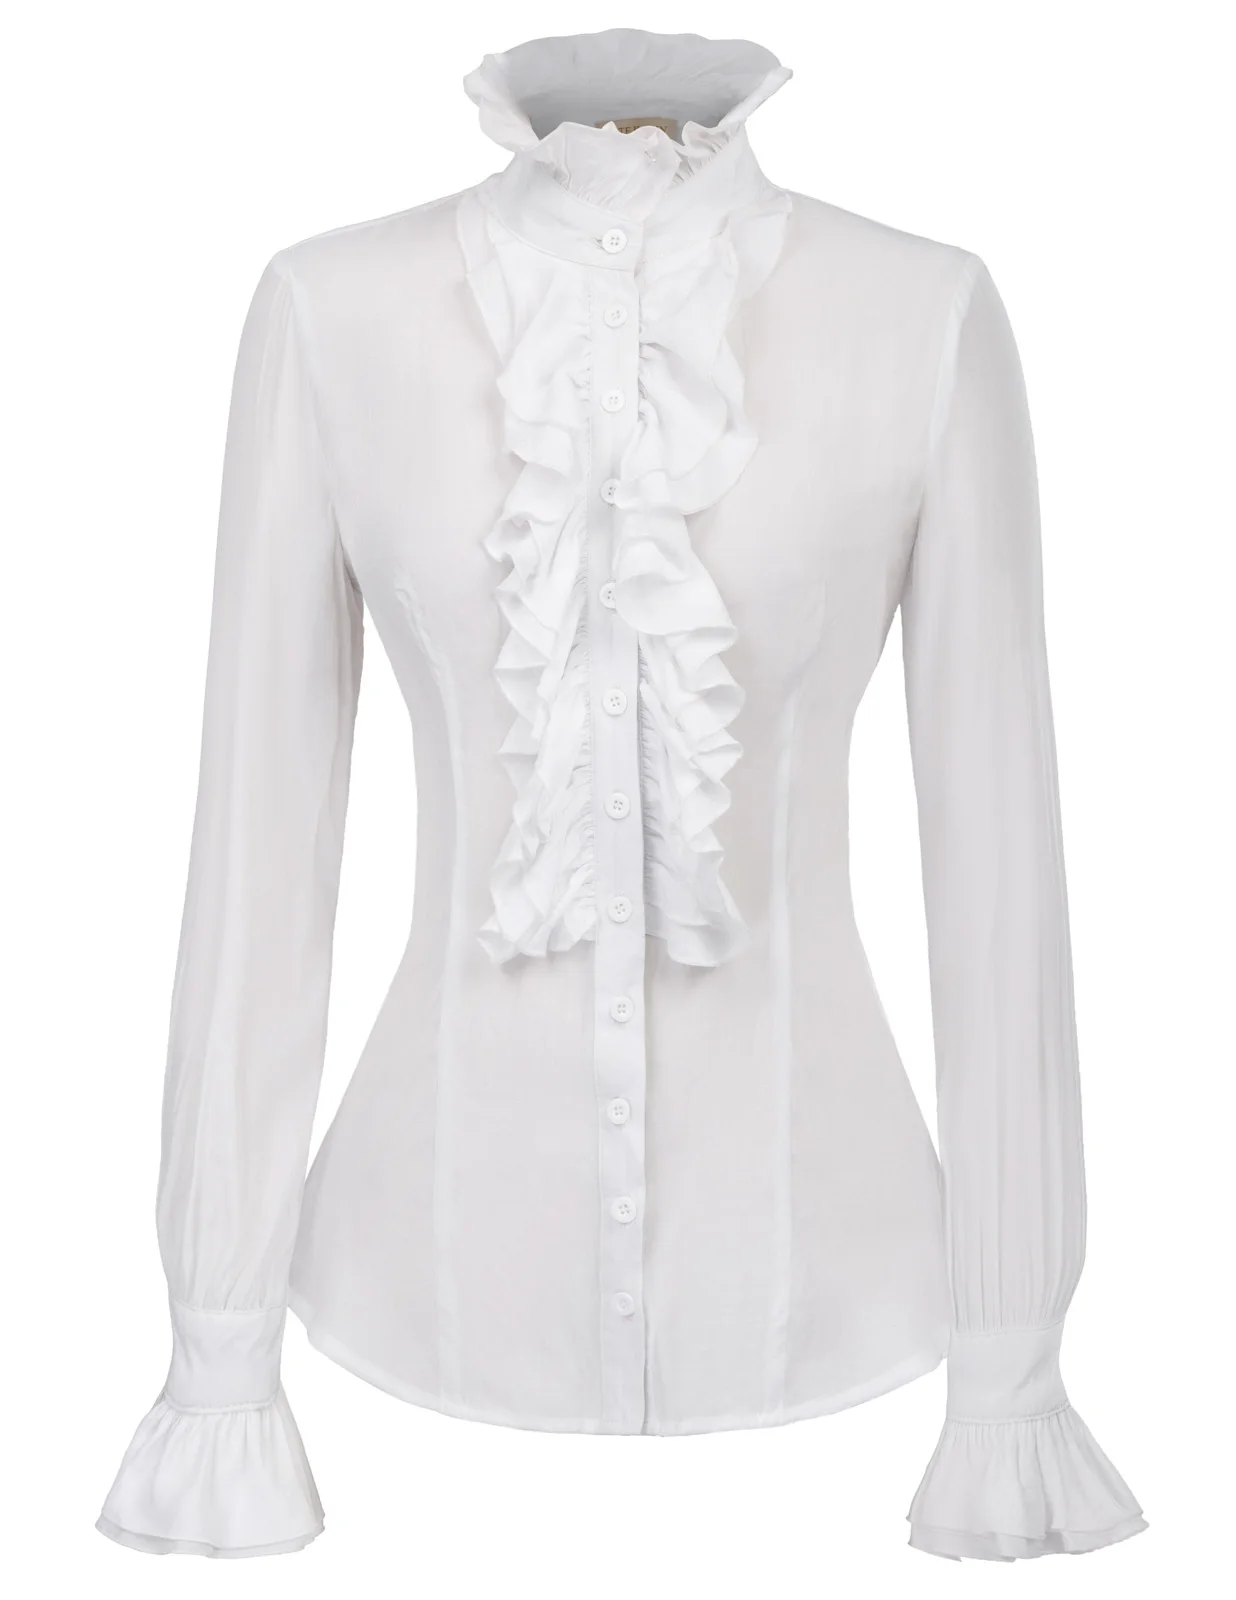 KK solid color Vintage Retro tops women blouses Victorian Style Long ...